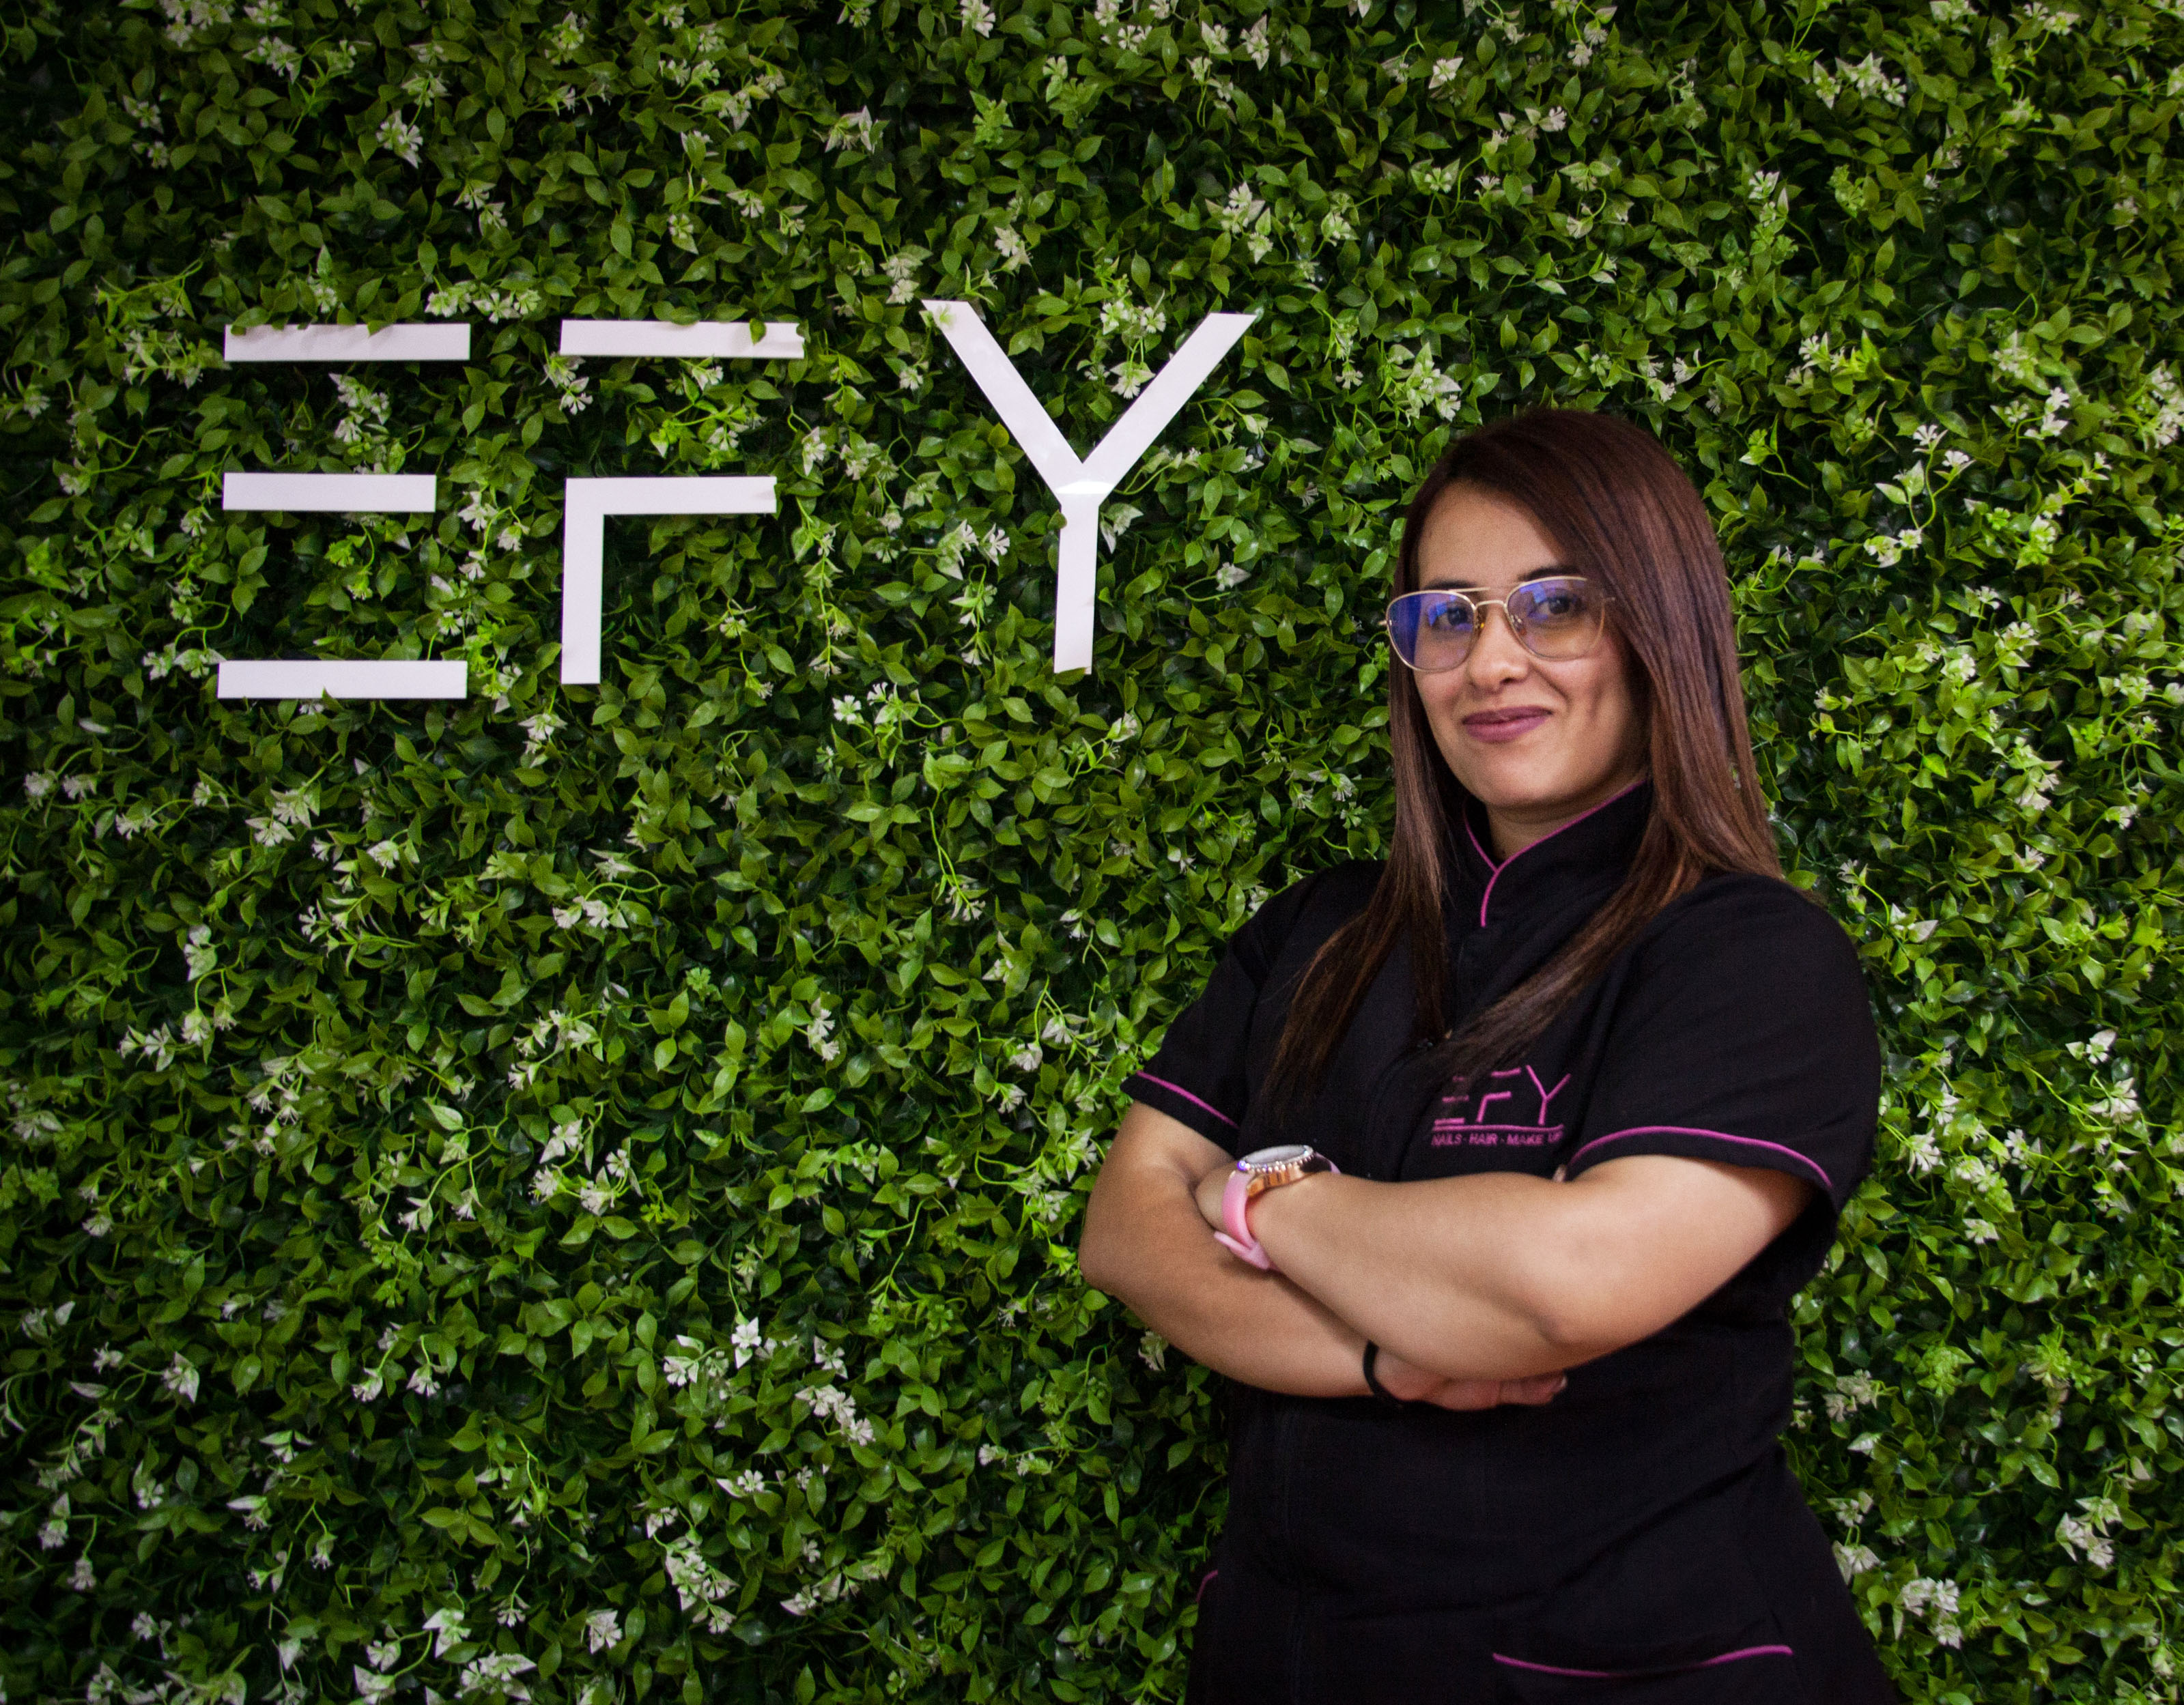 Mensualmente las profesionales de la belleza que hacen parte de EFY reciben entre el 65% y 70% de las ganancias de las labores gestionadas a través de la plataforma. Foto: Jhonatan Acevedo